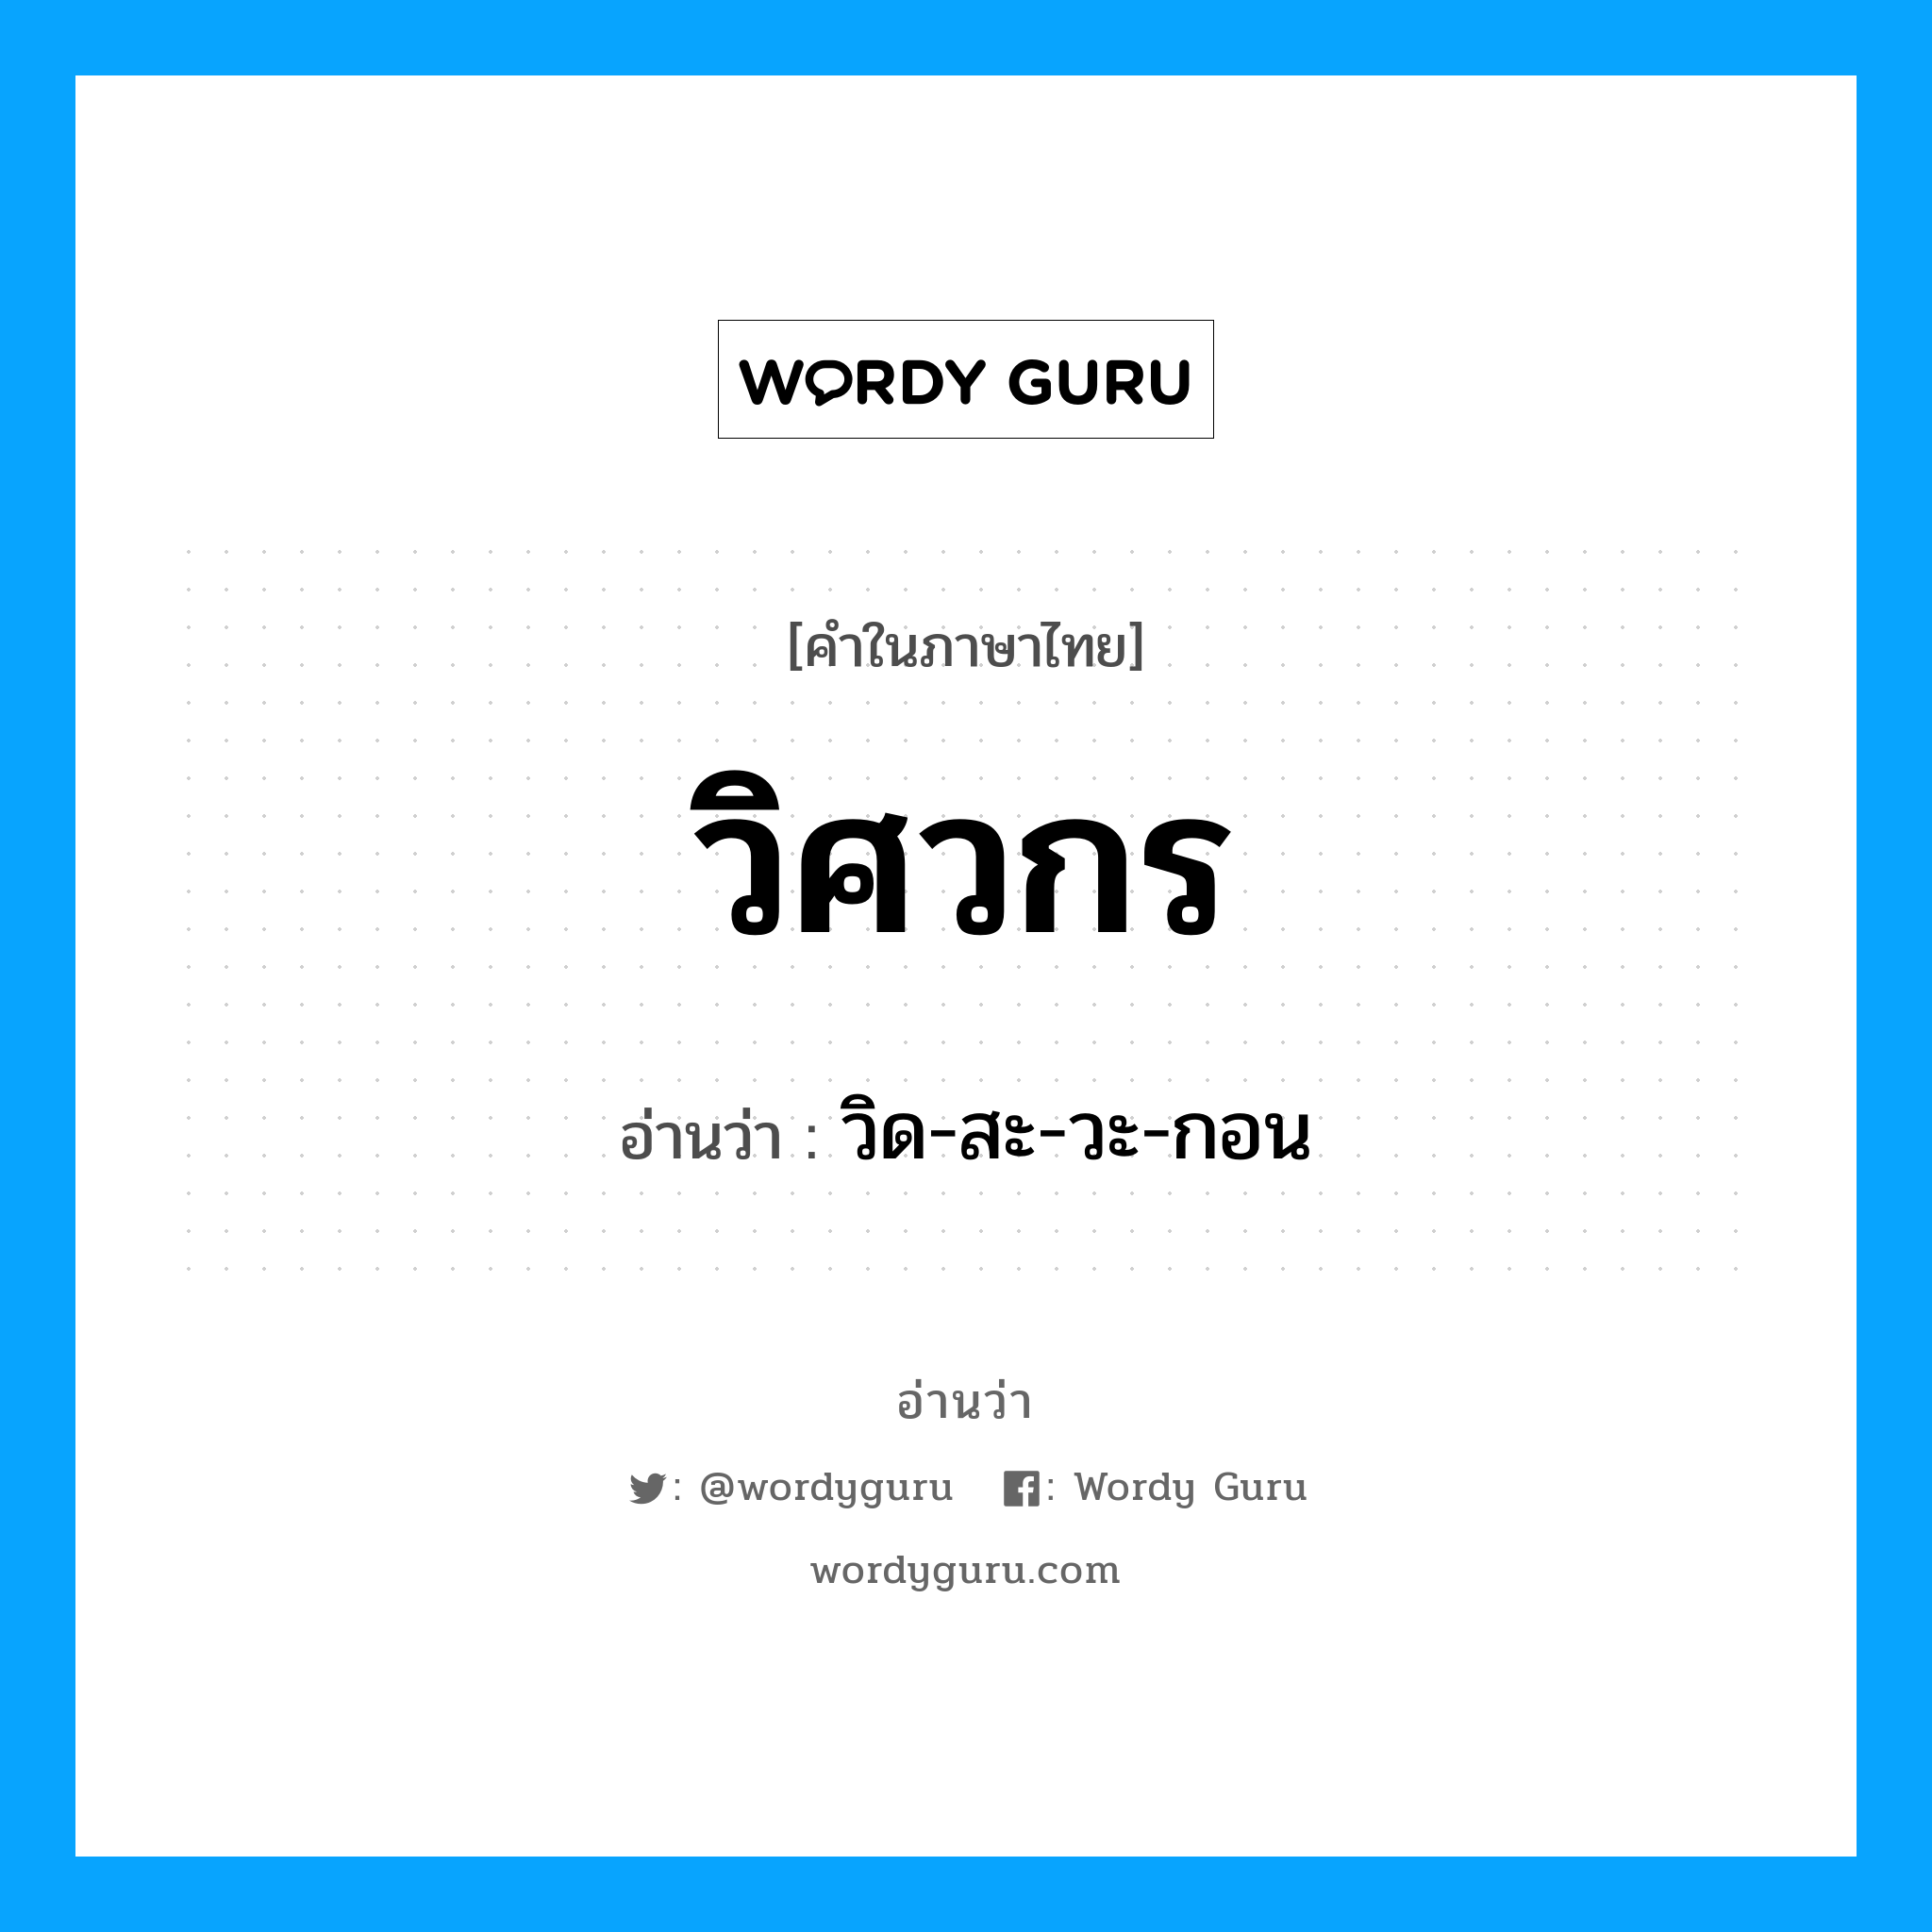 วิด-สะ-วะ-กอน เป็นคำอ่านของคำไหน?, คำในภาษาไทย วิด-สะ-วะ-กอน อ่านว่า วิศวกร